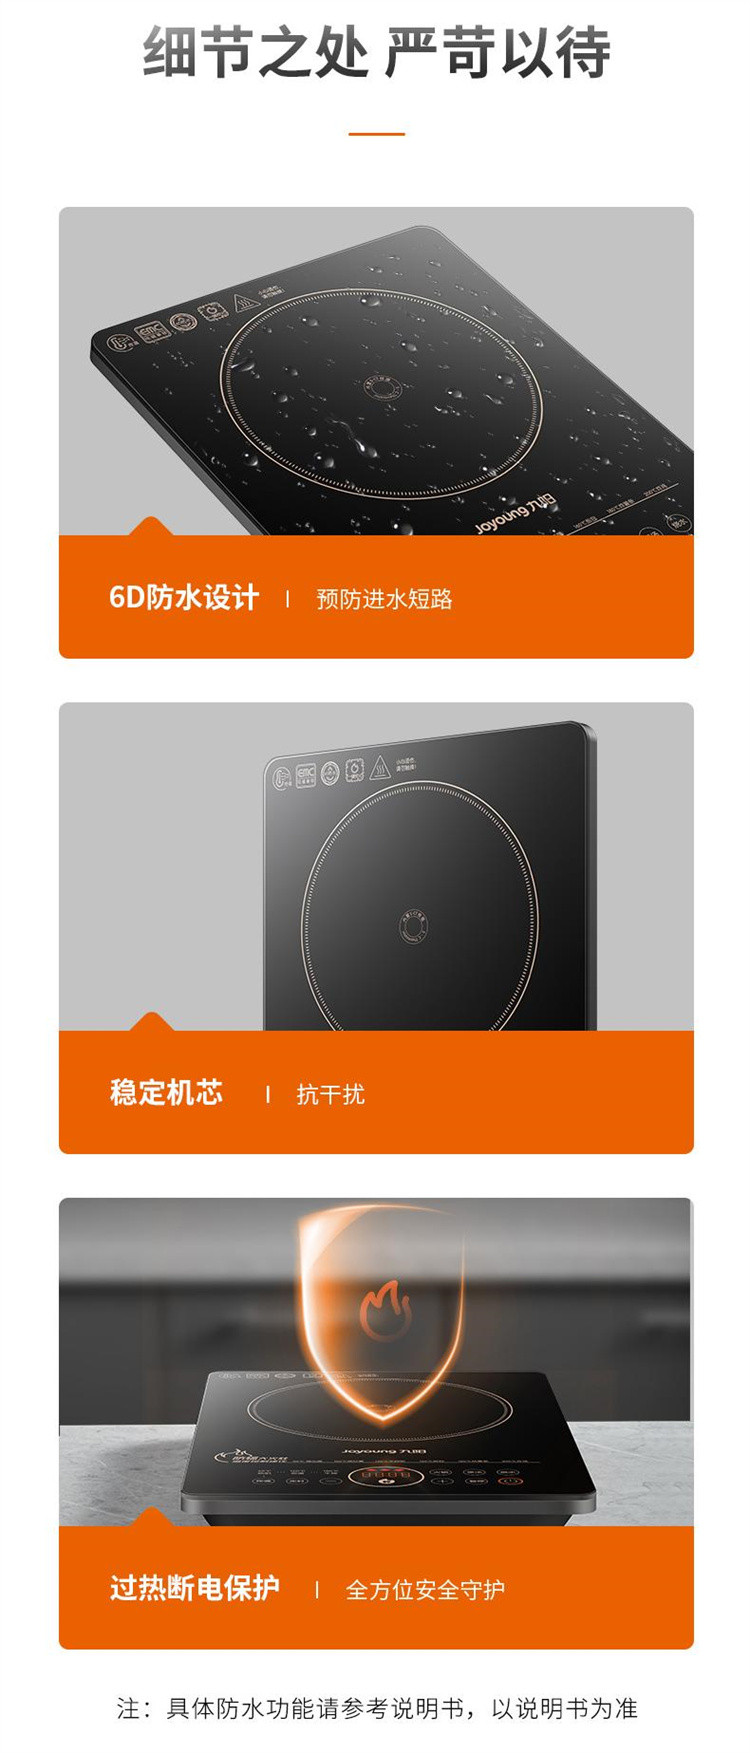 九阳/Joyoung IH加热多功能菜单电磁炉C22-F8